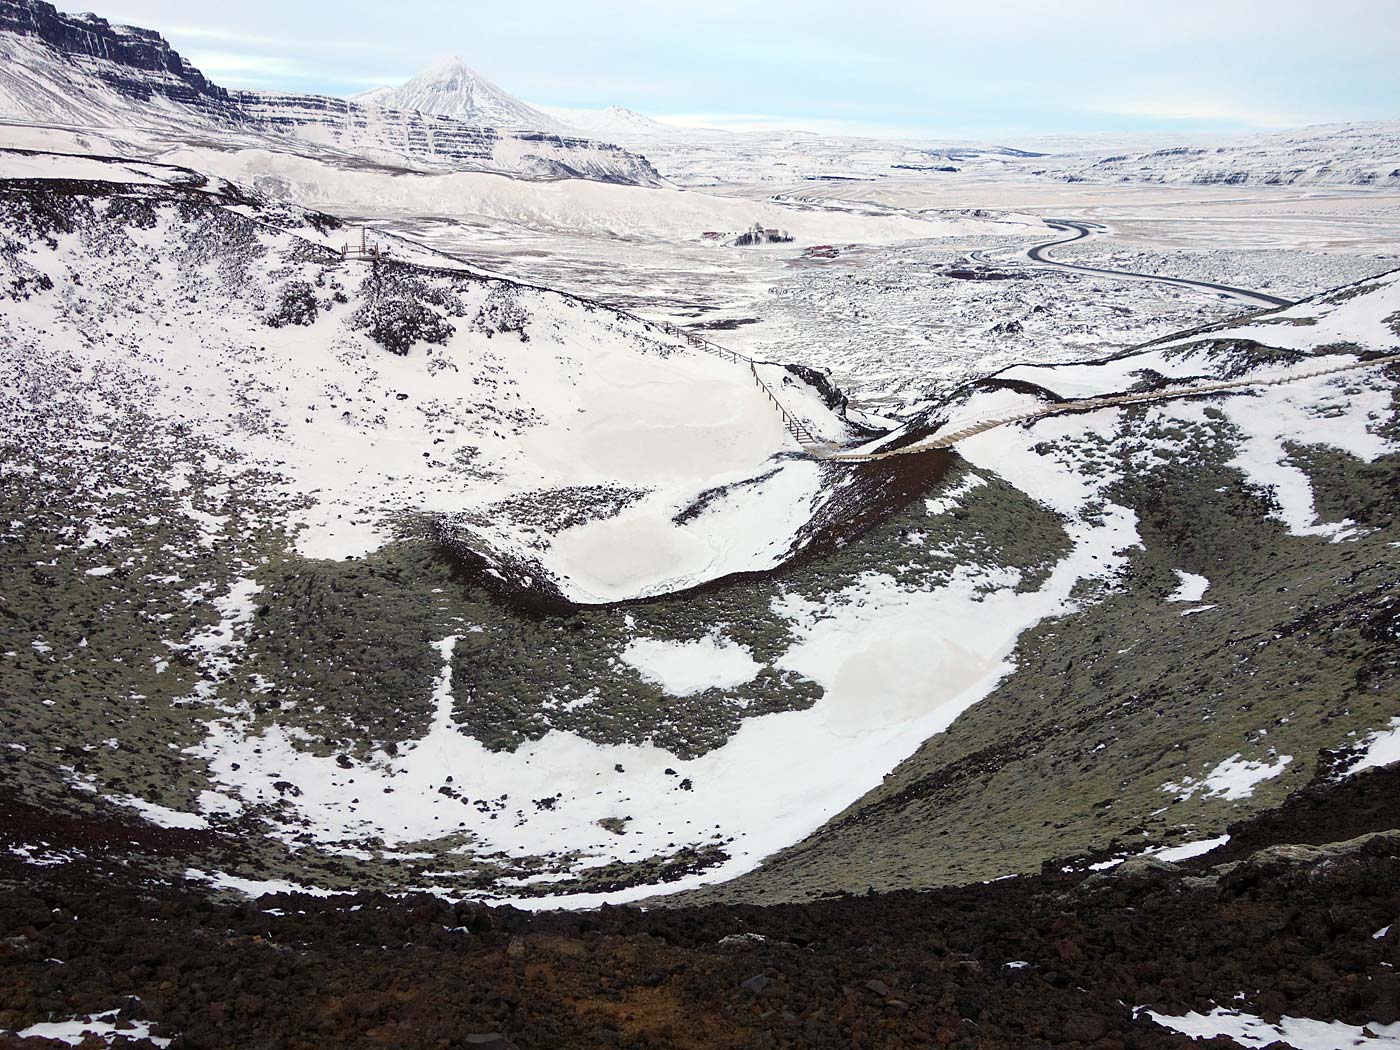 Grábrók. Kurze Wanderung nahe Bifröst. - IV. Einfach zu erkennen: Der Krater. (31.12.2013)